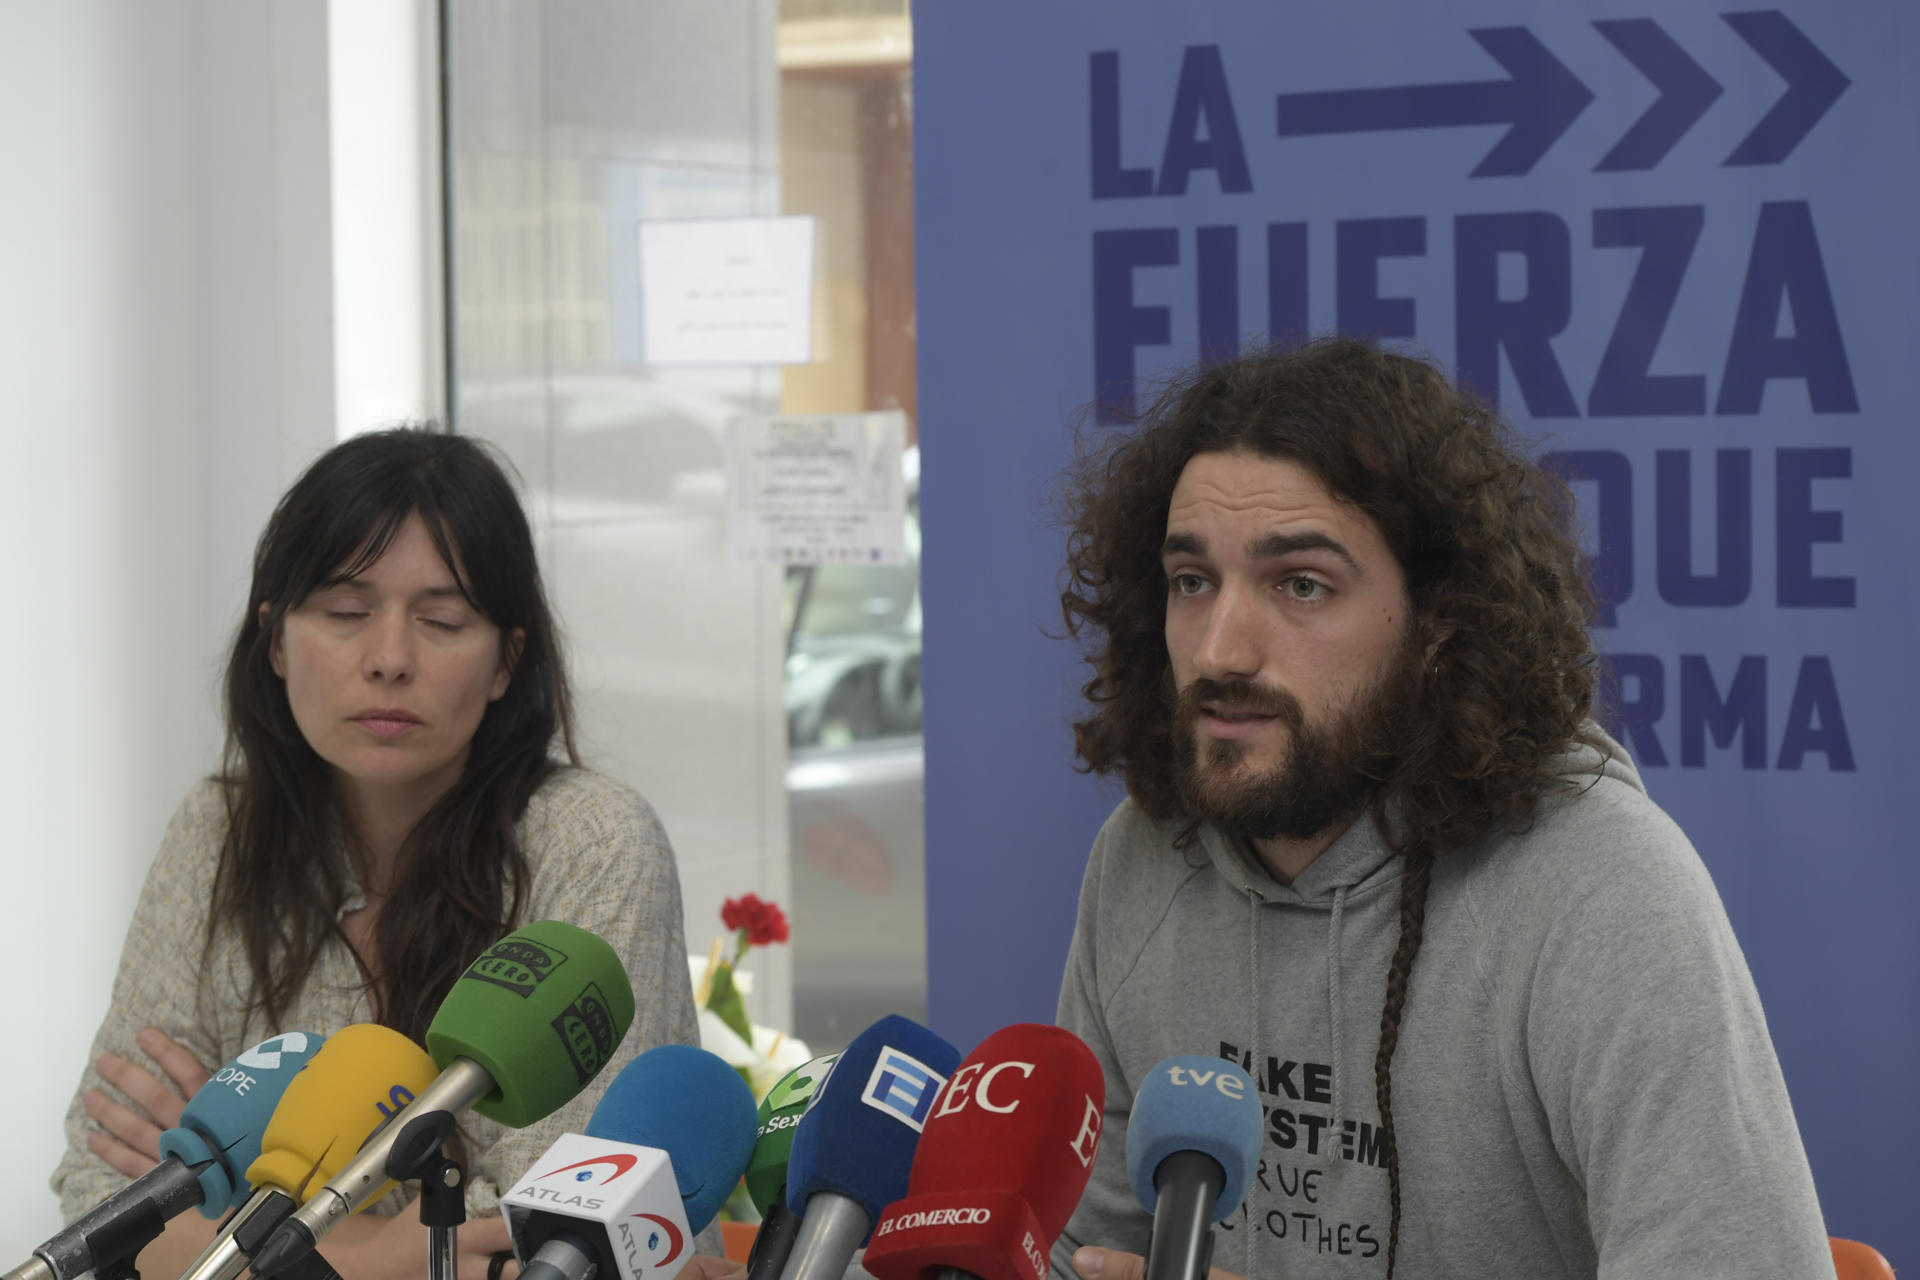 El candidato excluido por Podemos pide a sus compañeros que sigan adelante